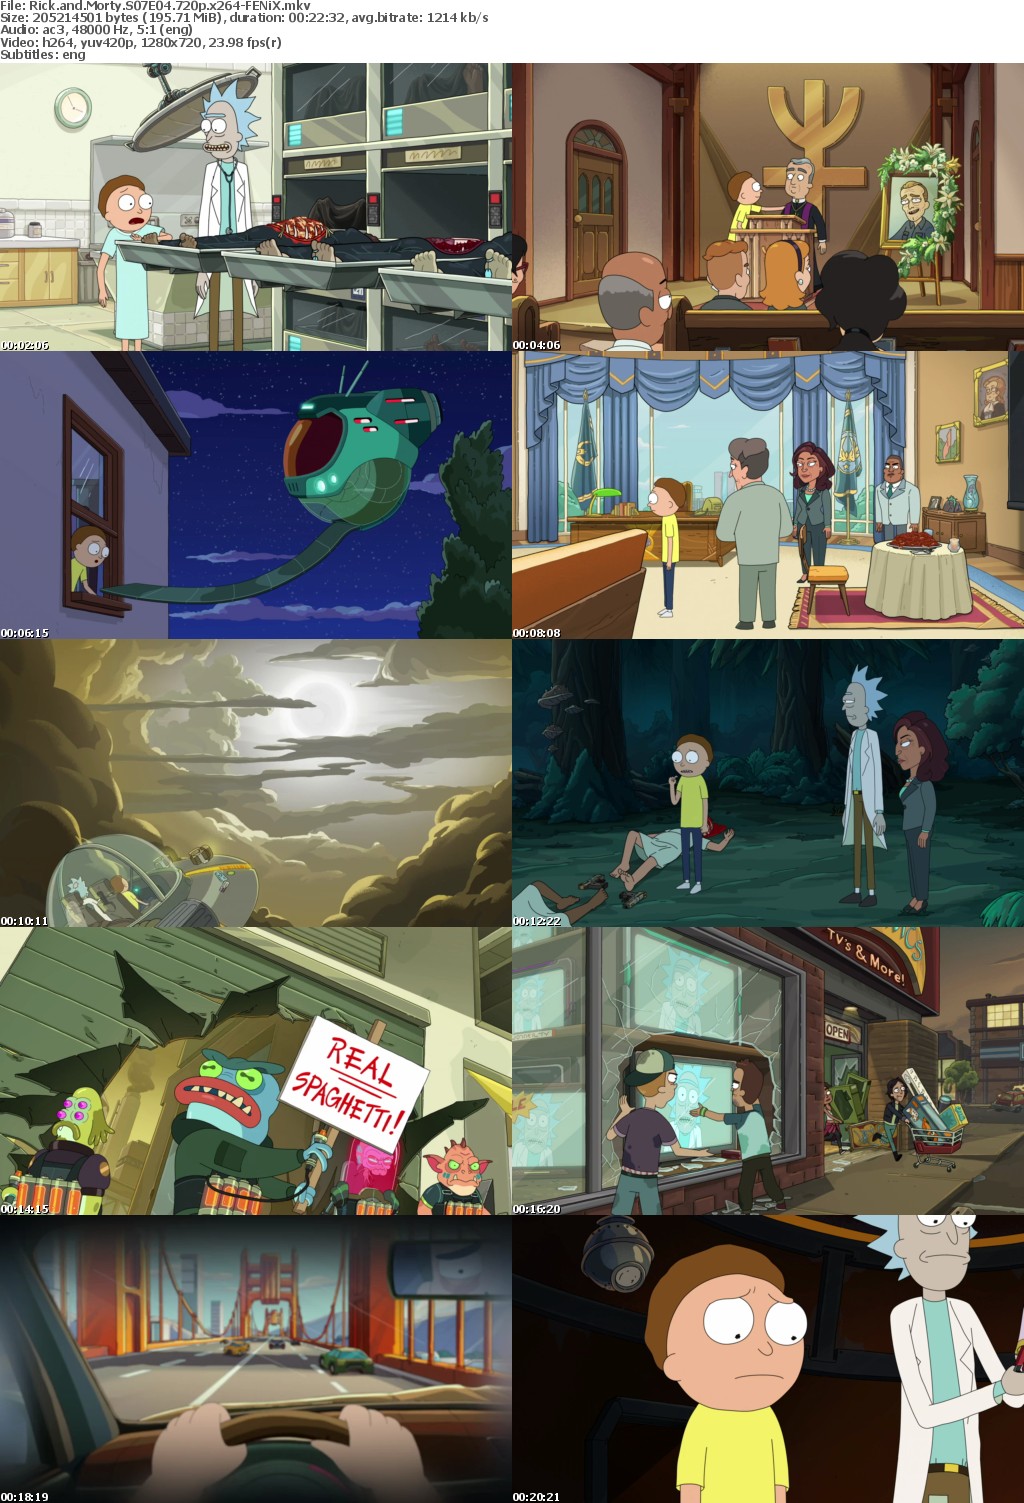 Rick and Morty S07E04 720p x264-FENiX